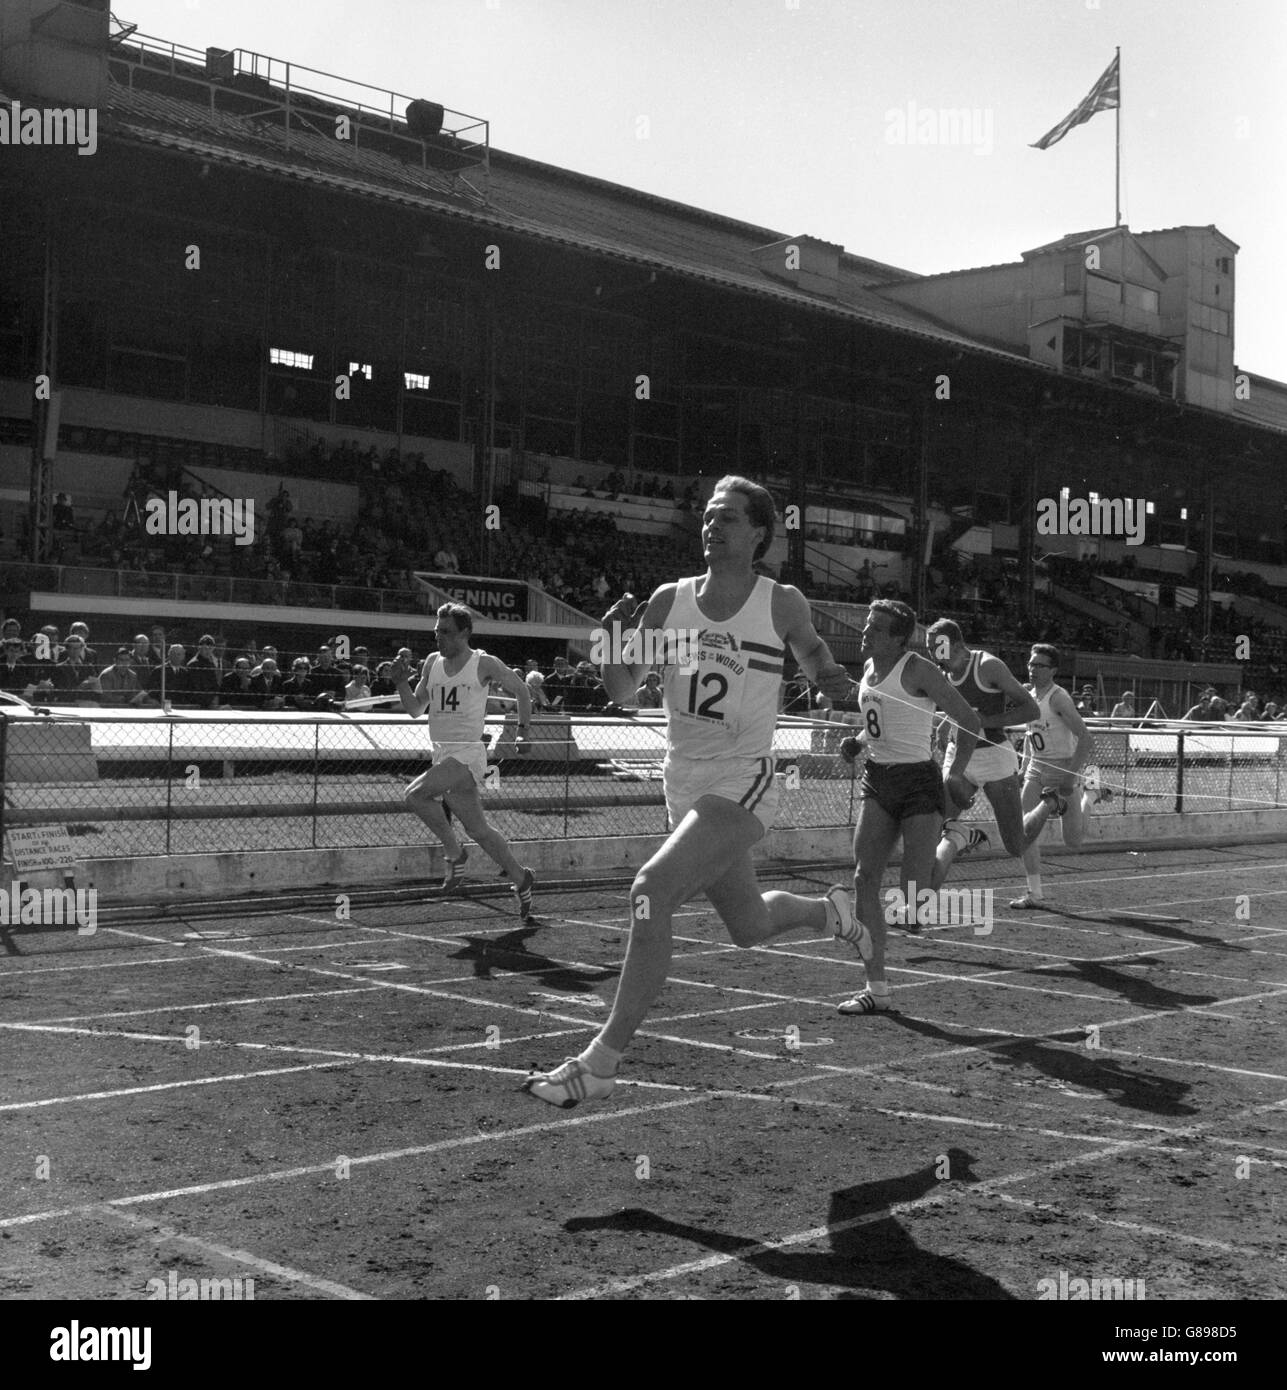 A. Metcalfe, de Grande-Bretagne, remporte la course internationale de 200 mètres, une invitation aux Jeux britanniques de la White City, Londres. Son temps était de 21.4 secondes. Banque D'Images